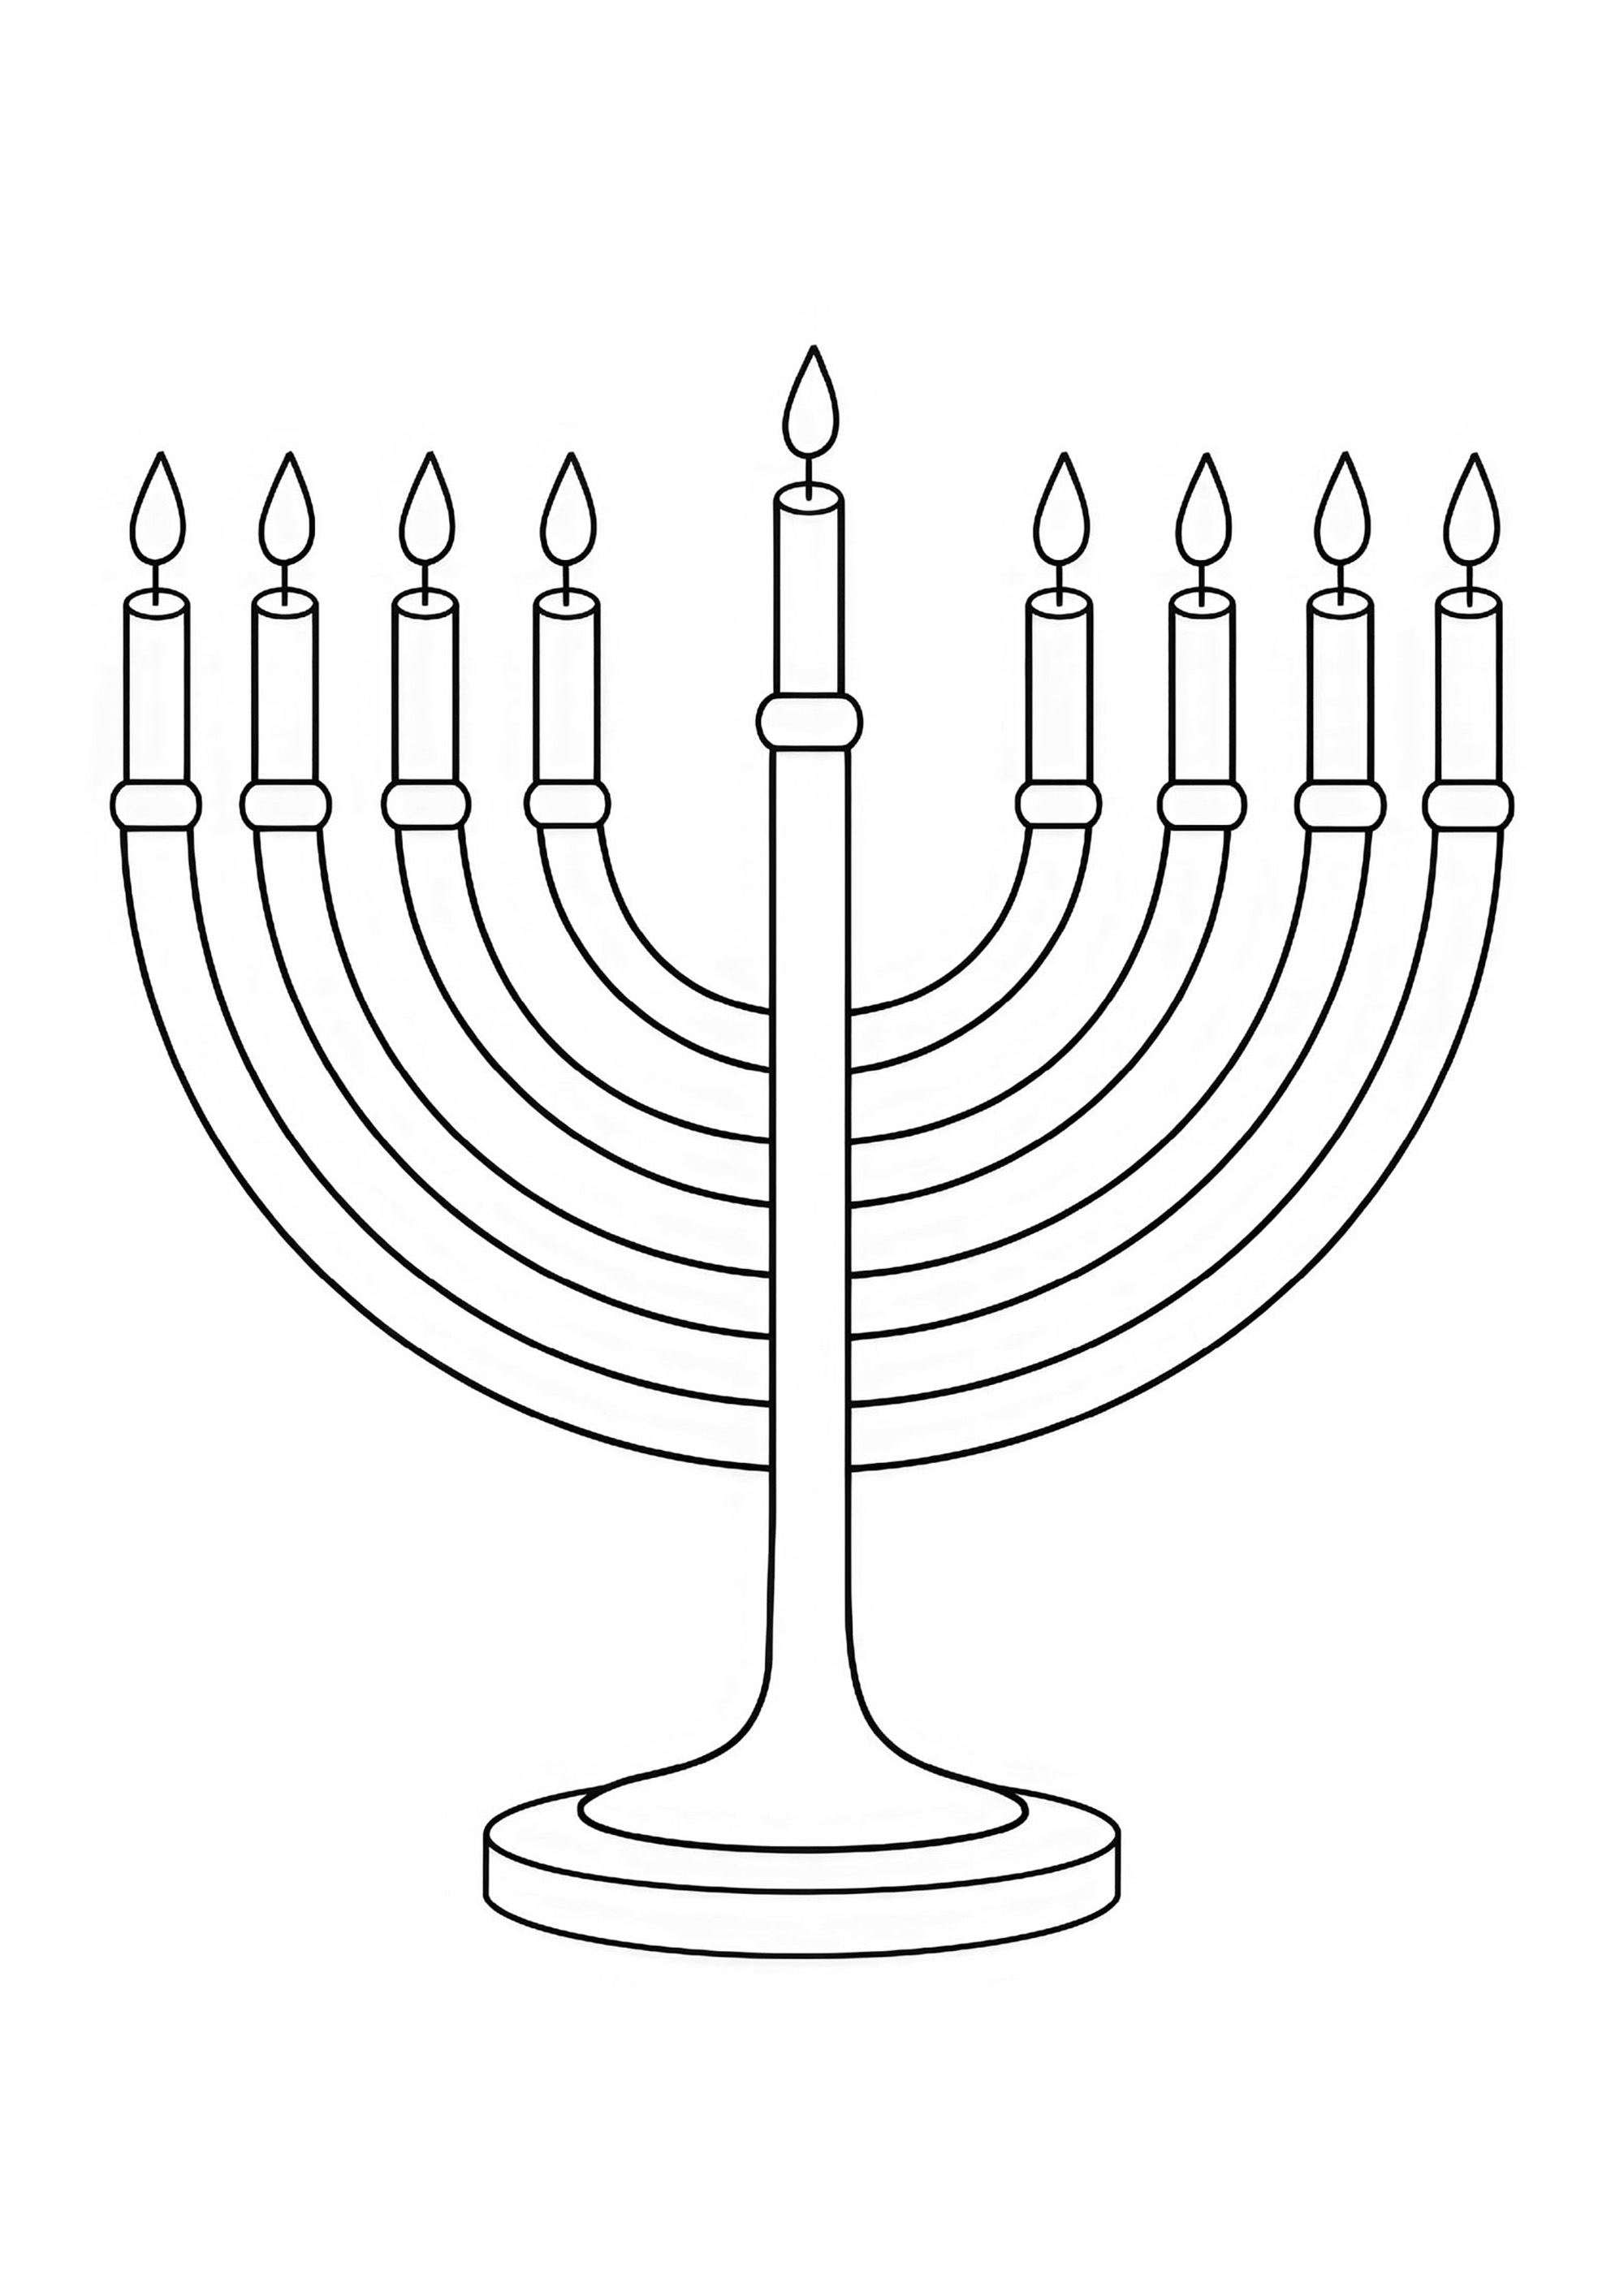 Menorá colorido. A Menorá é um candelabro de sete braços utilizado pelos judeus a partir do século VIII.